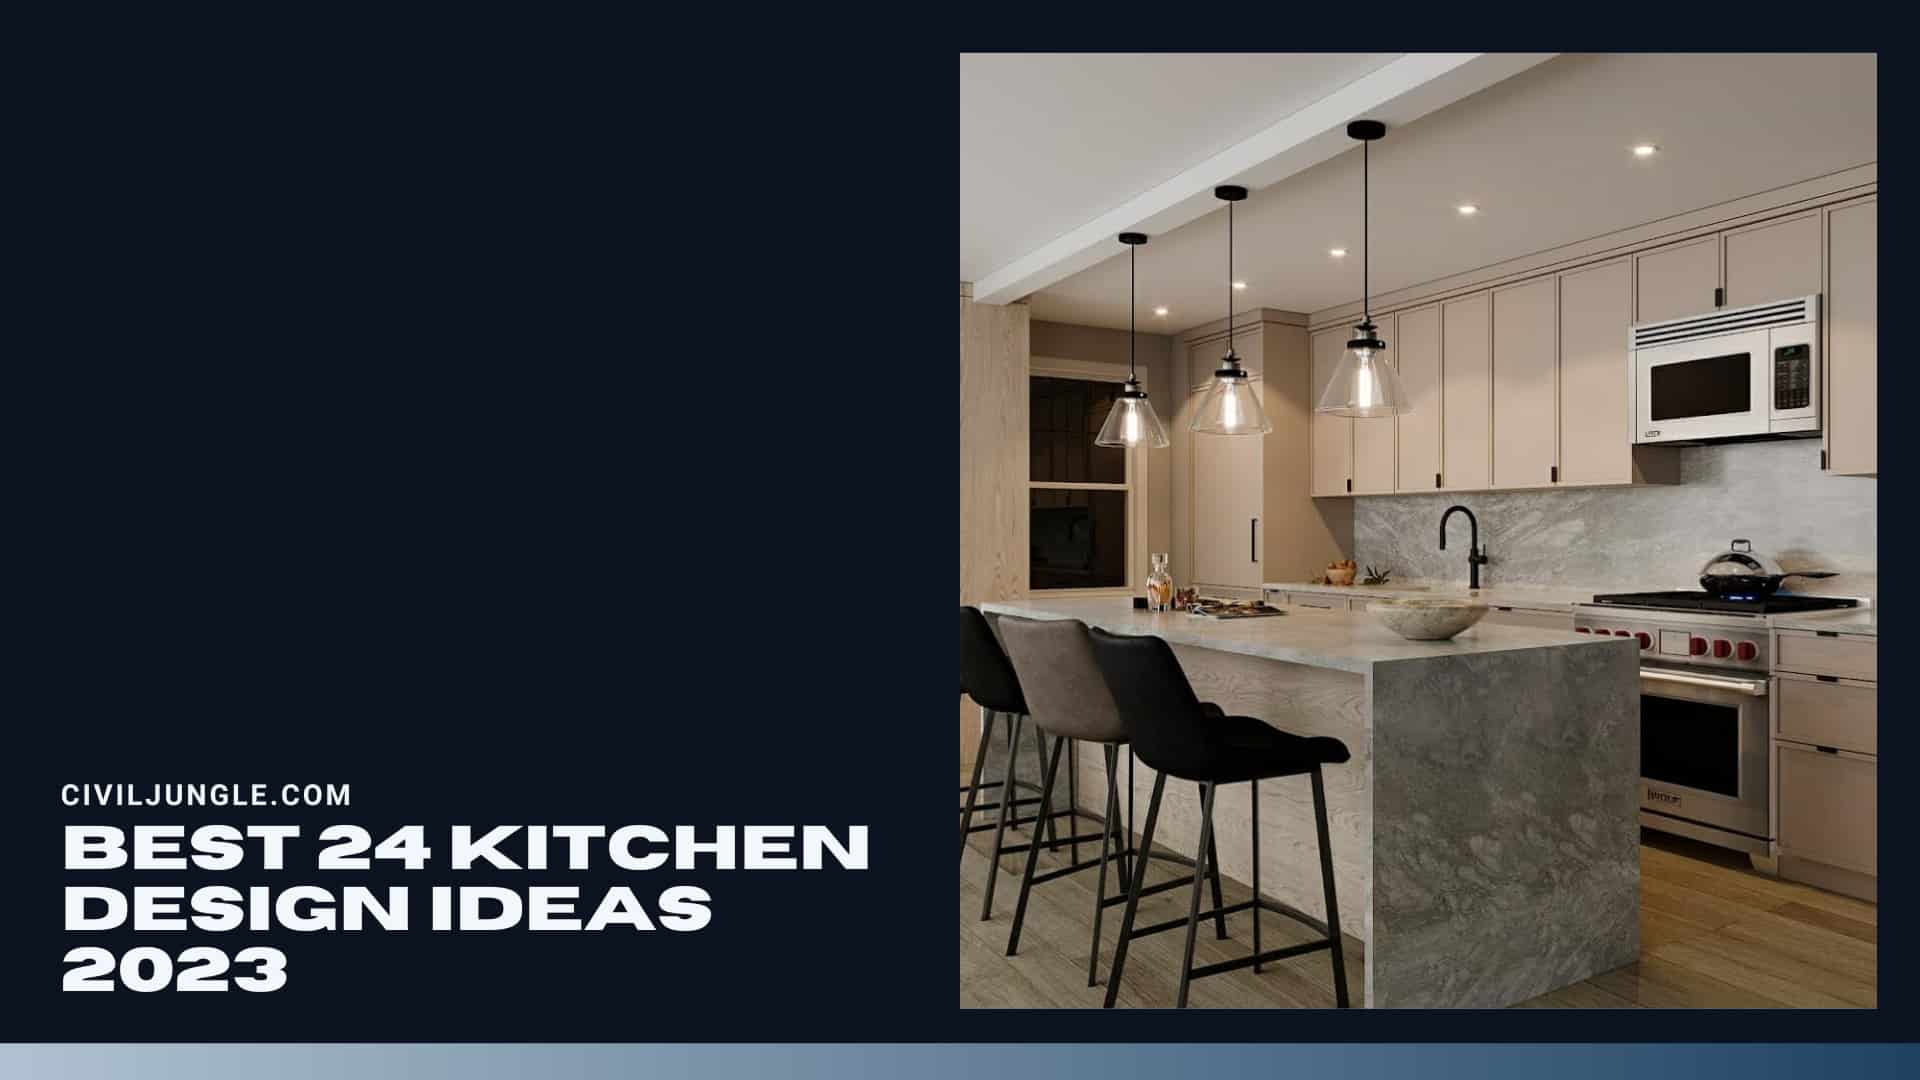 Best 24 Kitchen Design Ideas 2023